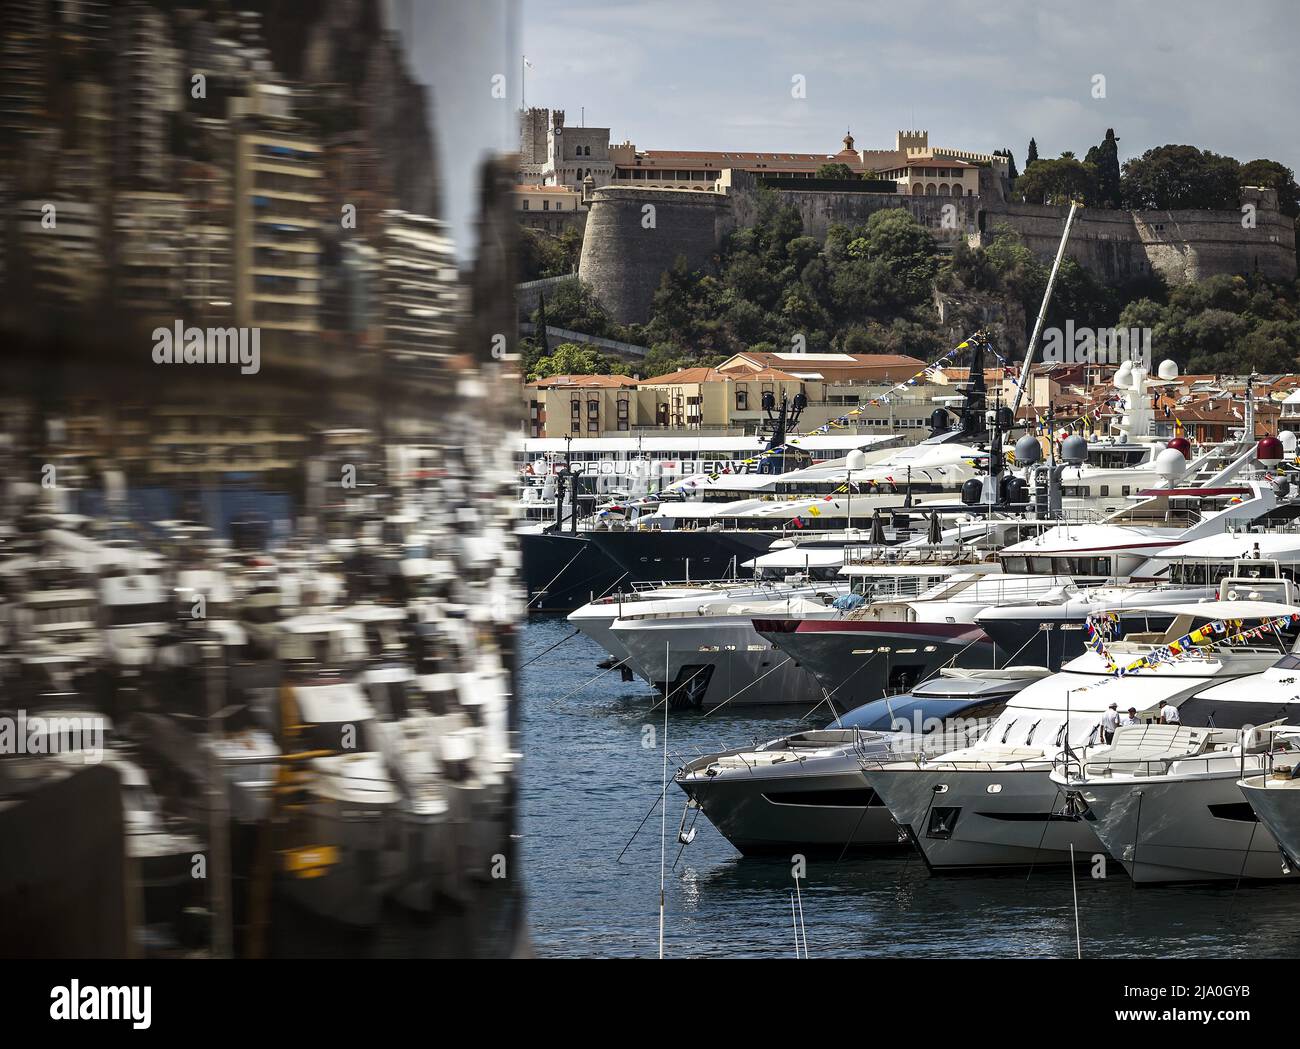 2022-05-26 11:43:30 MONTE-CARLO - luxuriöse Yachten im Hafen im Vorfeld des Formel 1 Grand Prix. Das siebte Rennwochenende dieser Saison in der Formel 1 startet in den engen Gassen von Monaco. ANP REMKO DE WAAL niederlande Out - belgien Out Stockfoto